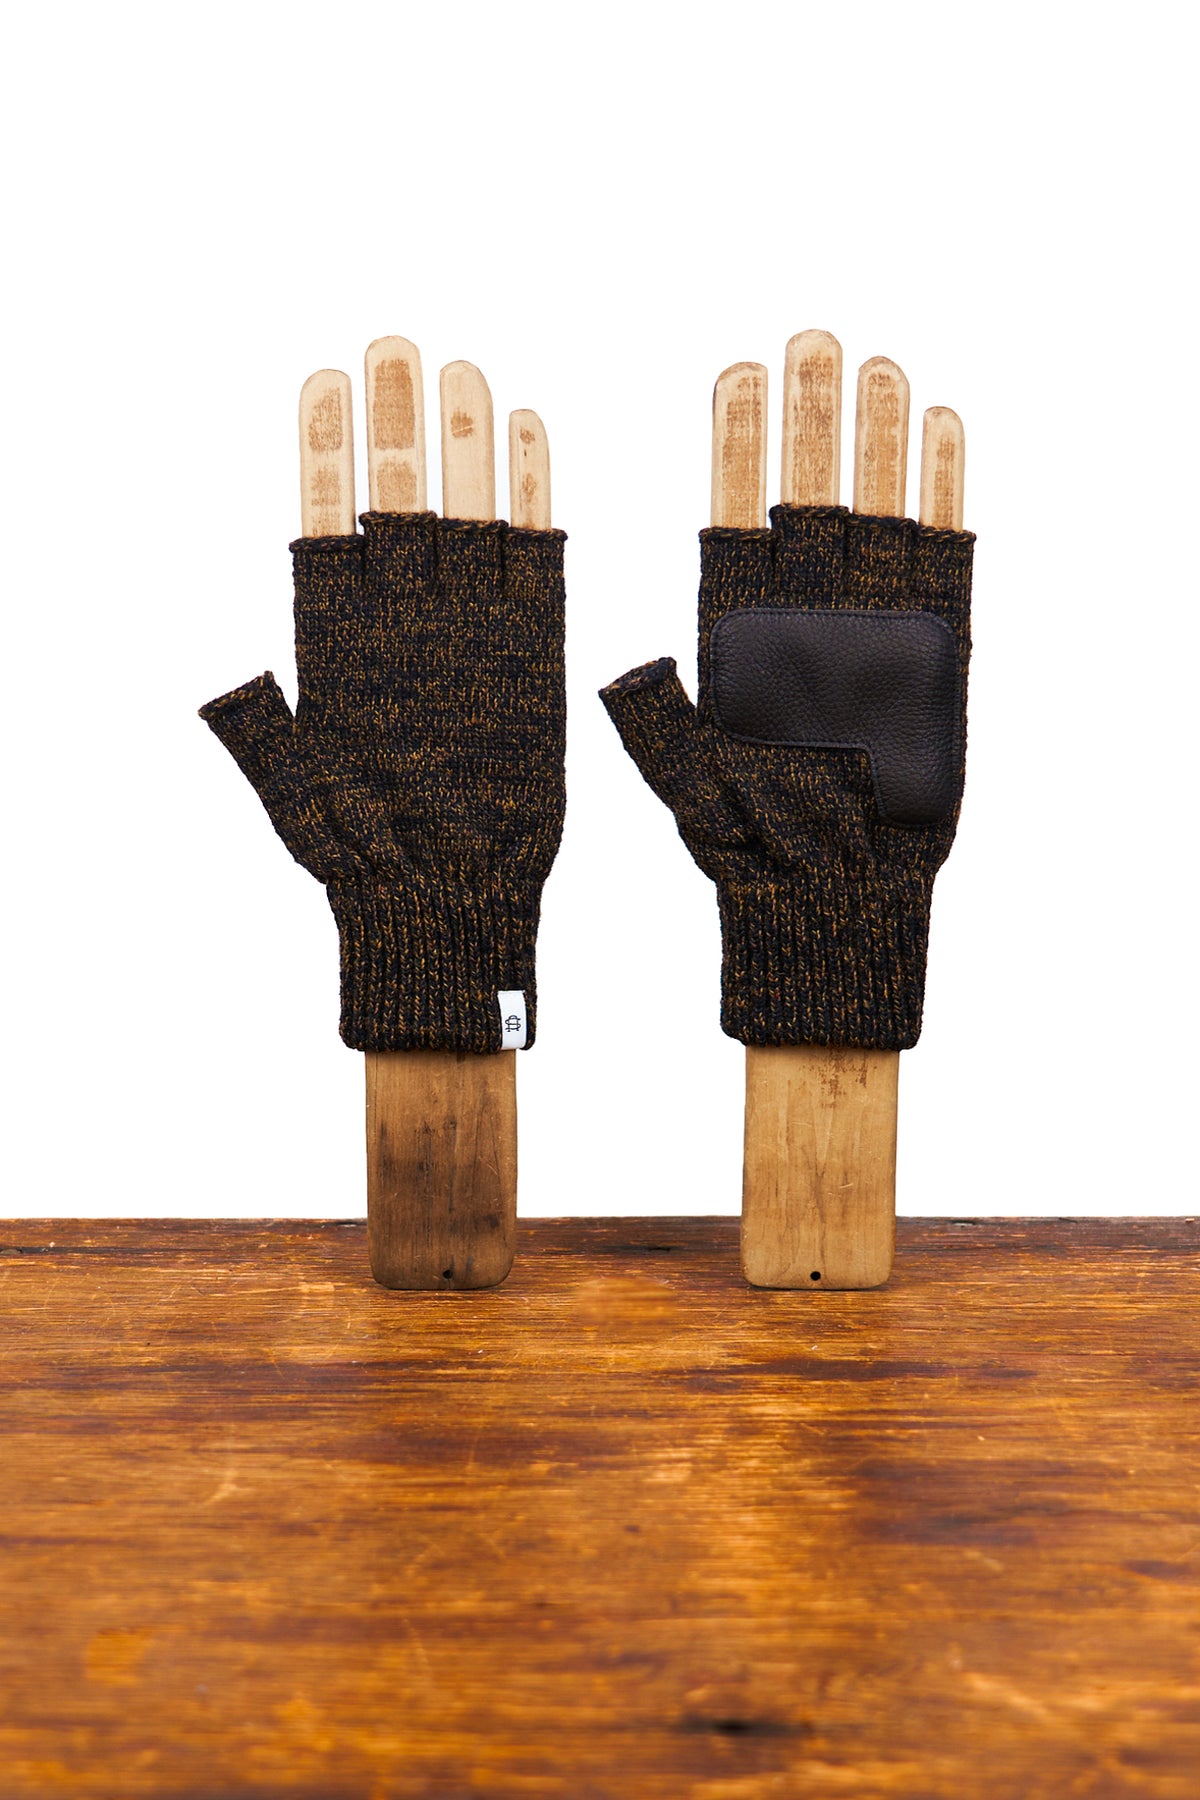 Rust Melange Fingerless Glove with Black Deerskin Palm